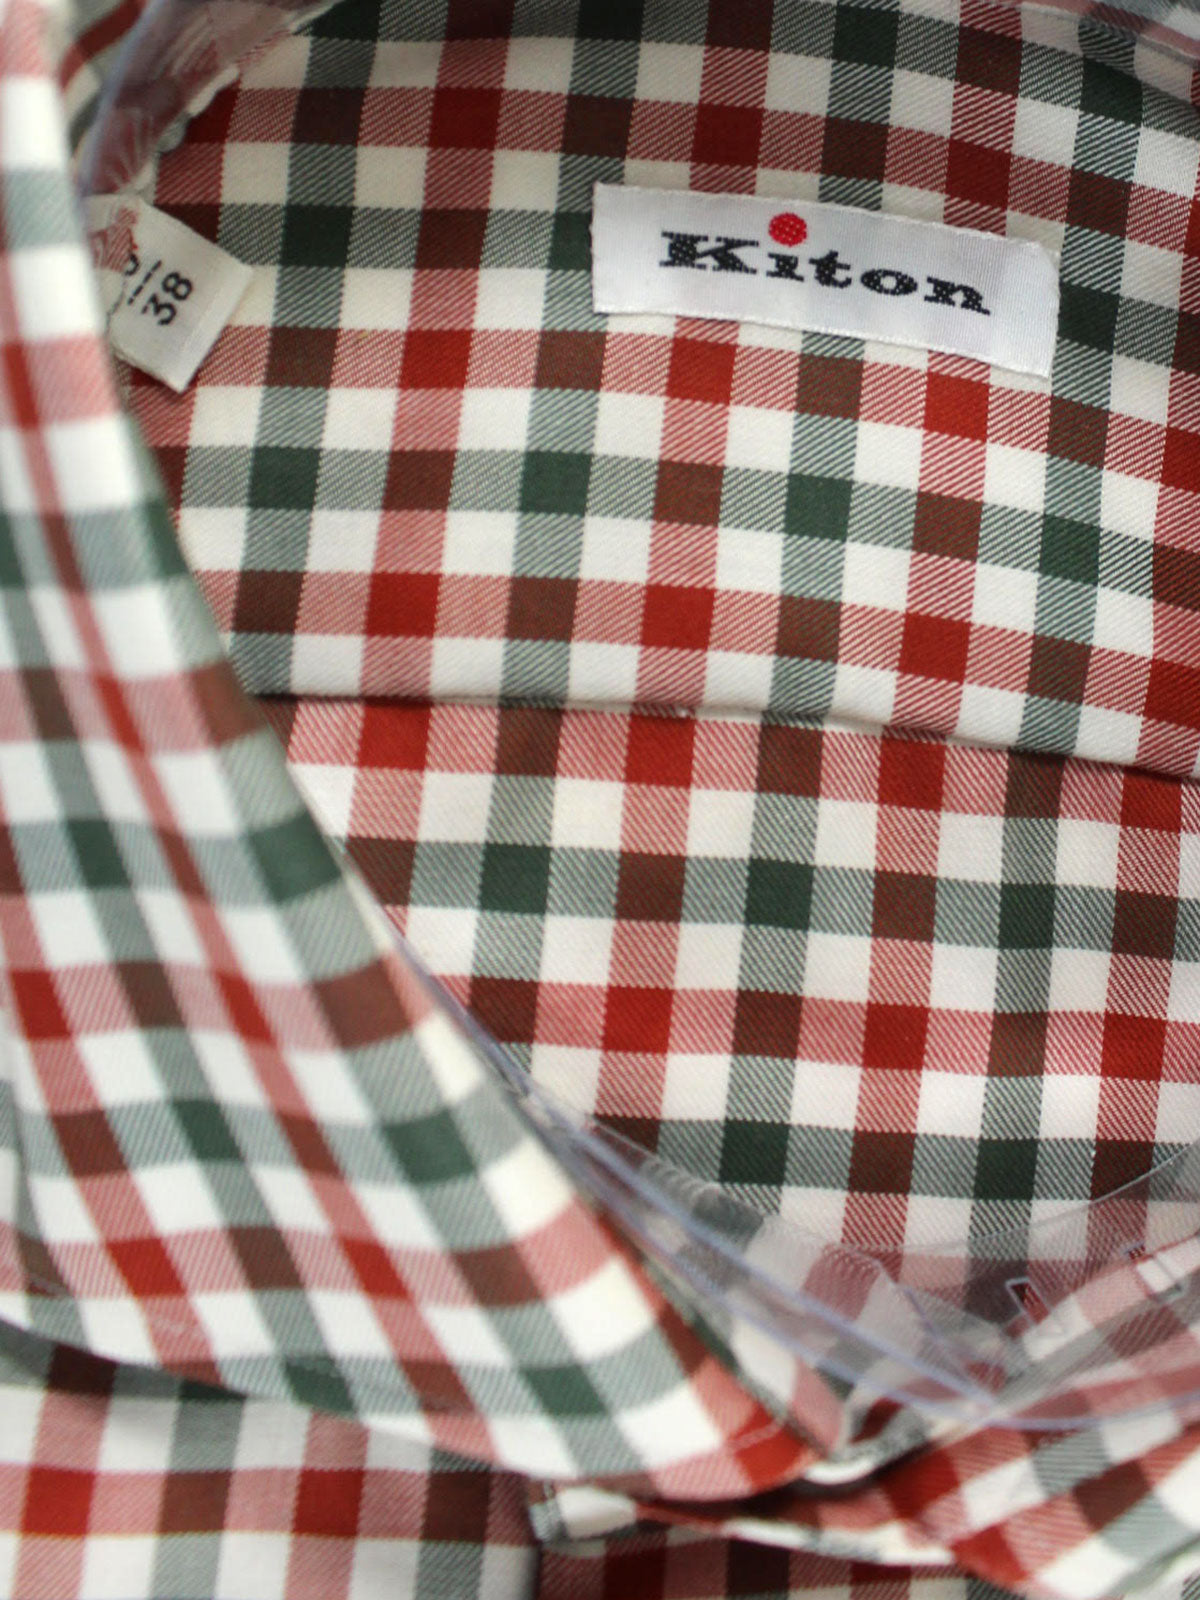 Kiton Sport Shirt White Gray Dark Red Gingham 40 - 15 3/4